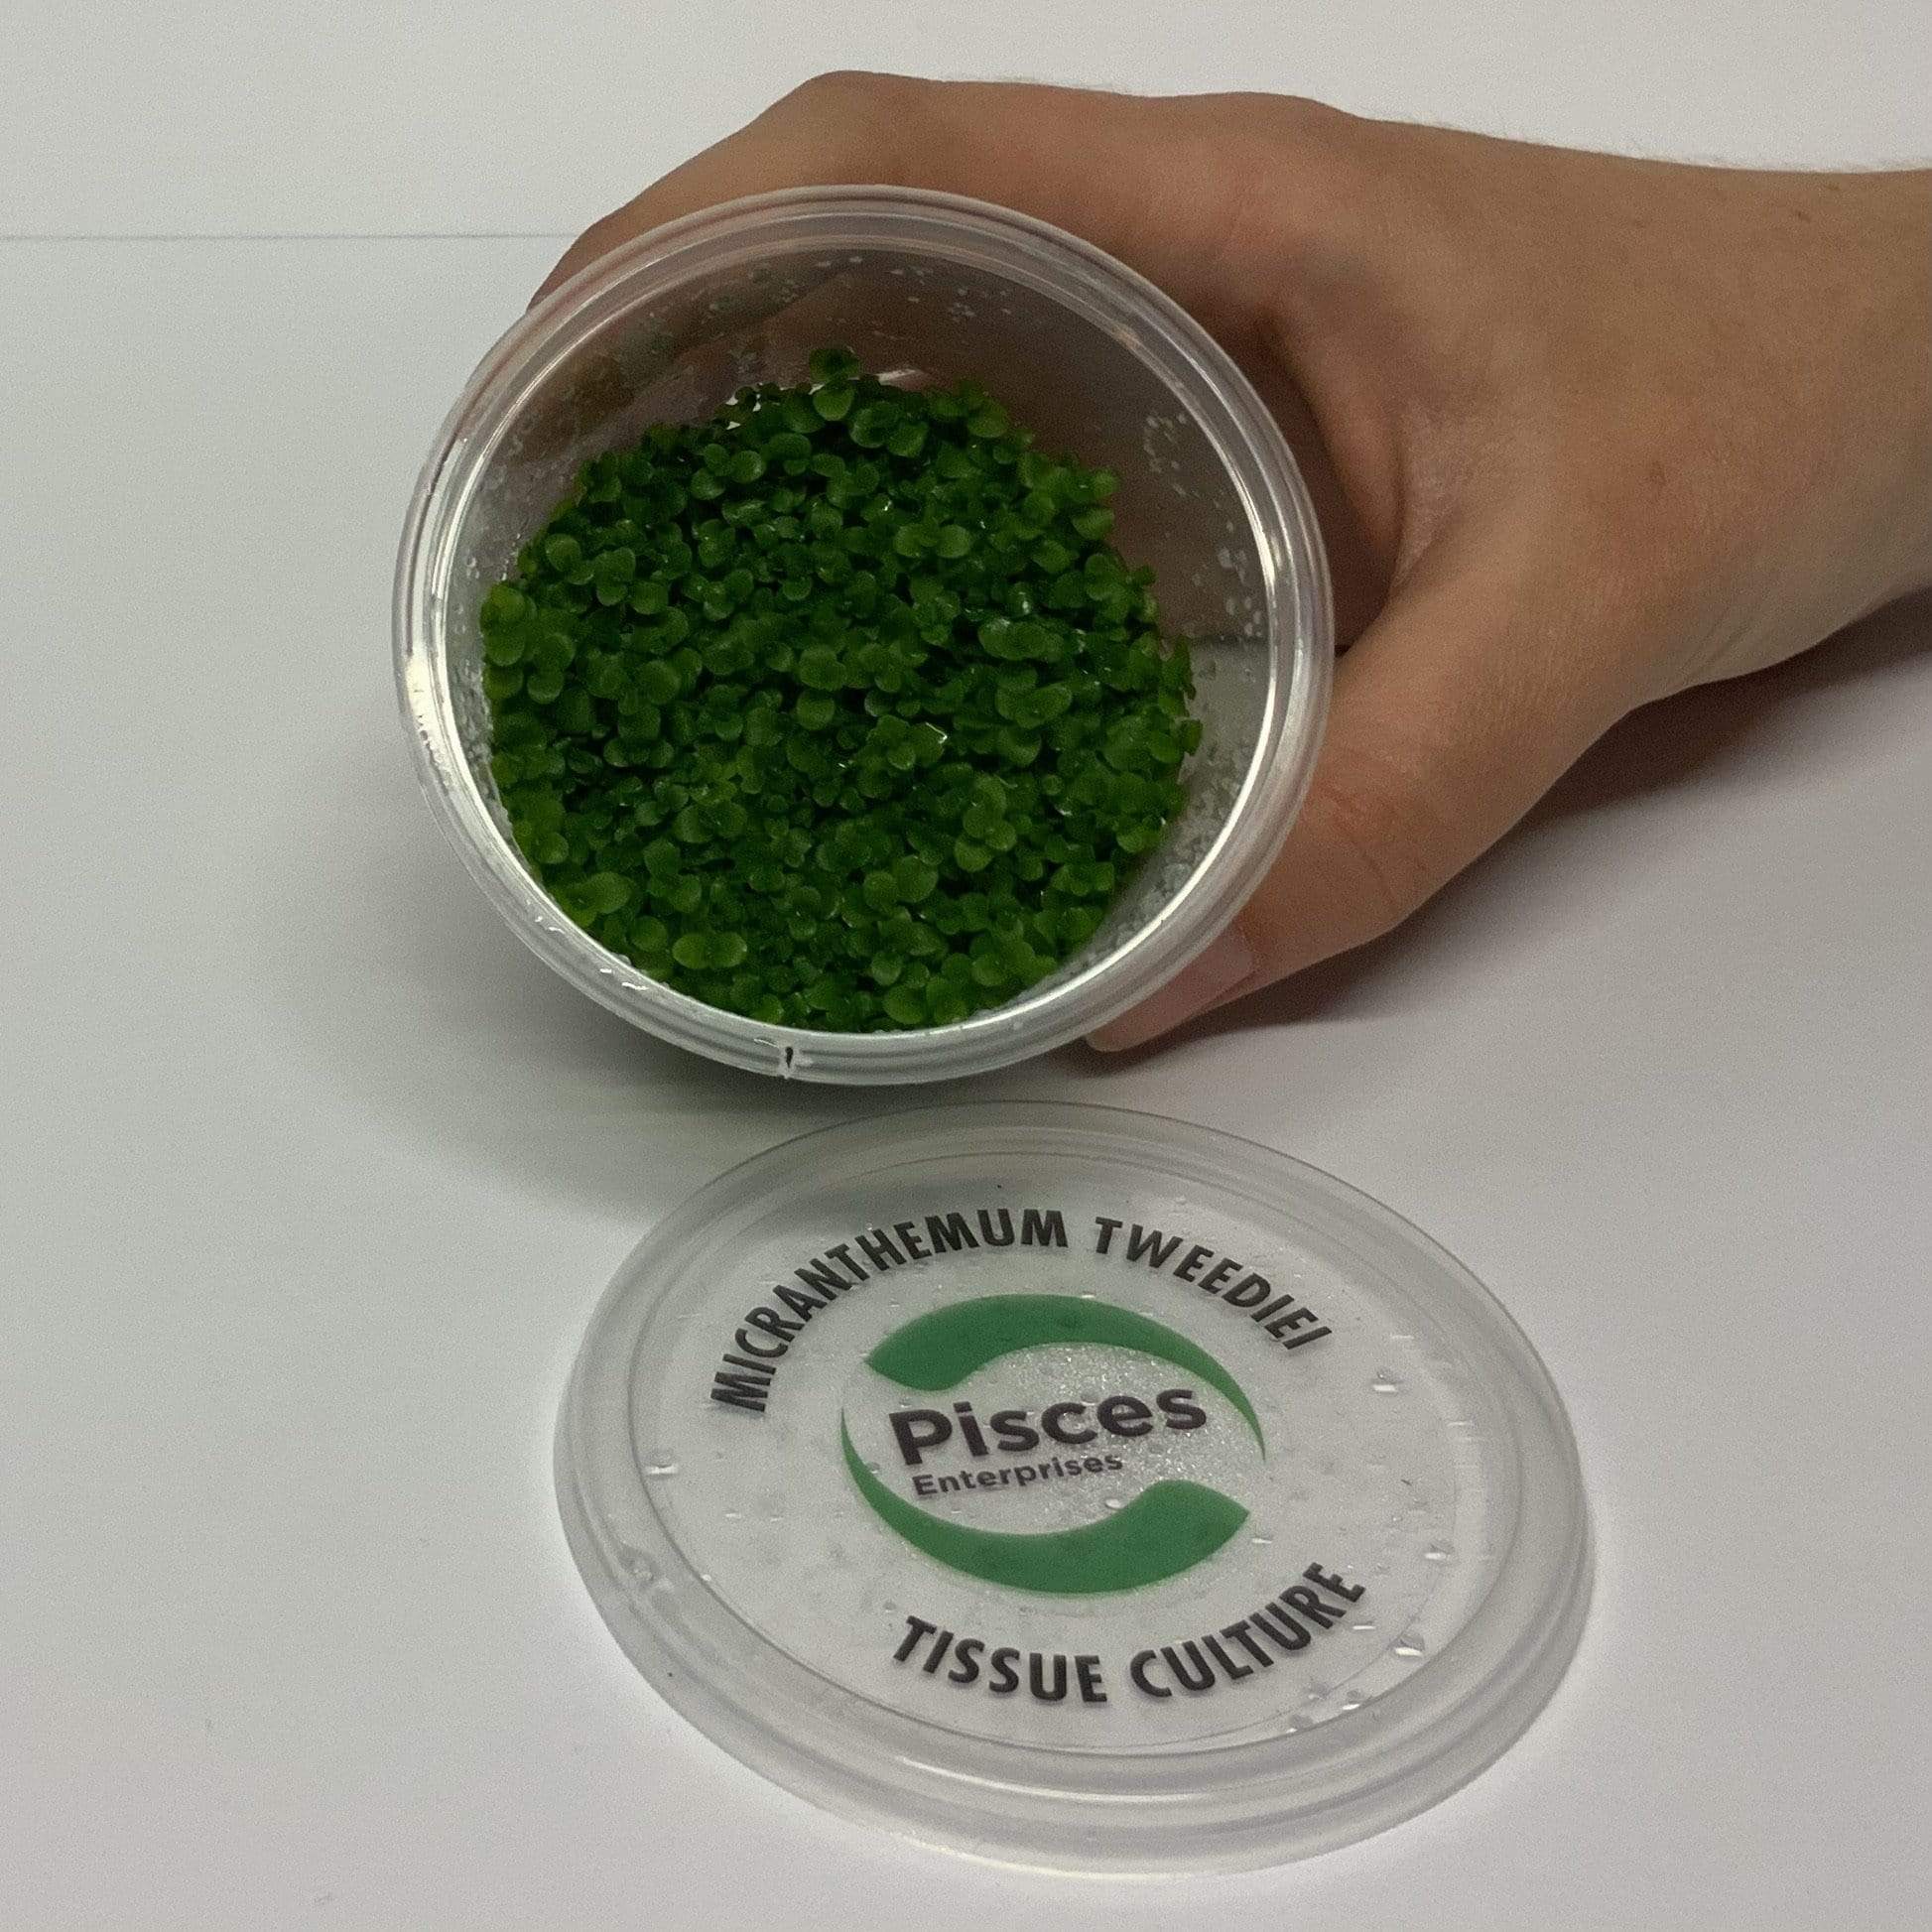 Pisces Enterprises Tissue Culture Micranthemum Umbrosum “Takashi Carpet” Tissue Culture